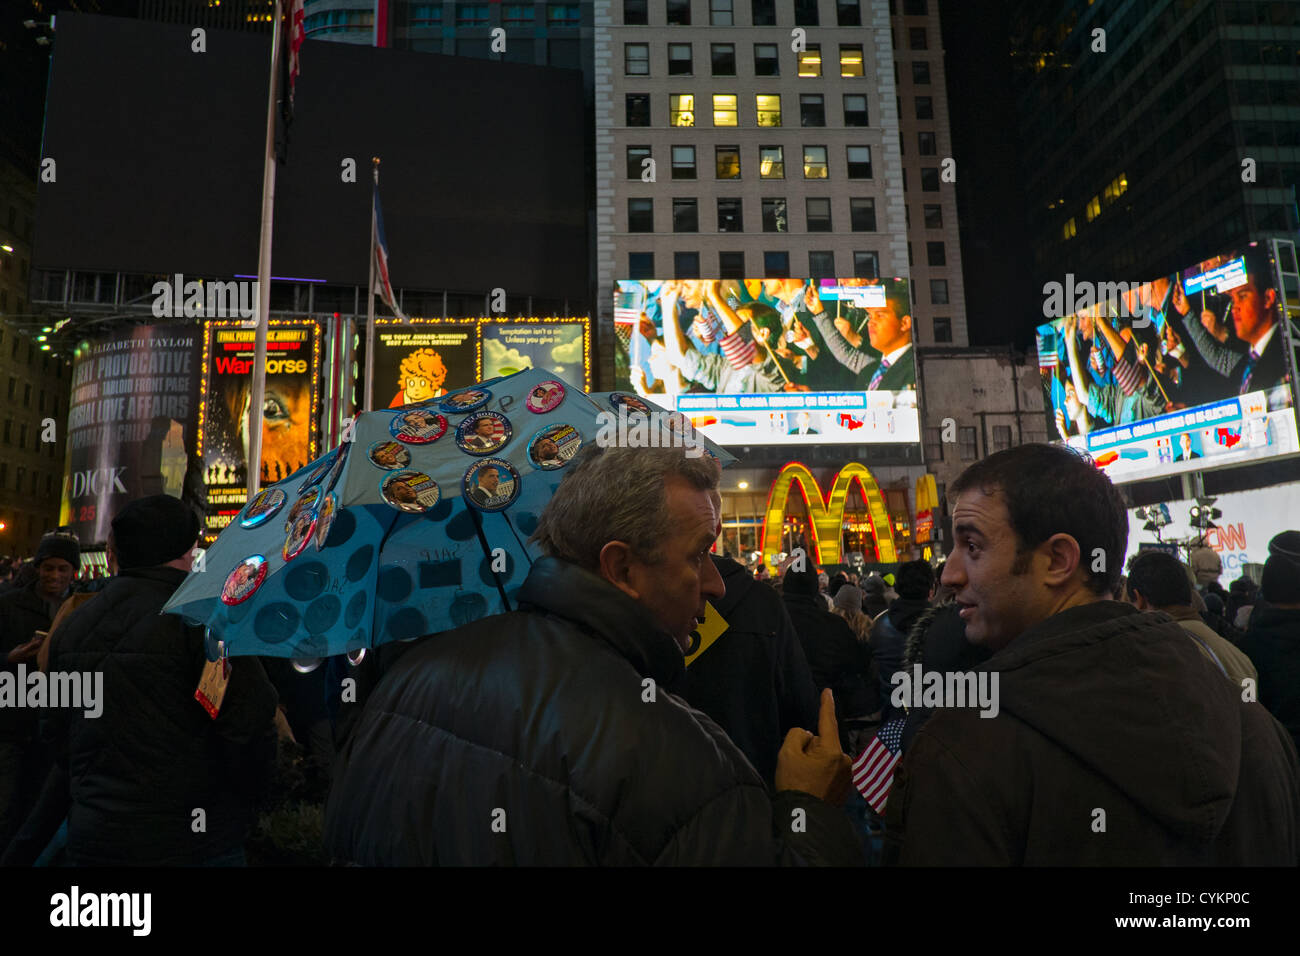 November 7, 2012, New York, NY, USA. L'uomo vendita di Obama e Romney buttonss campagna come la folla in Times Square festeggia il Presidente Barack Obama la rielezione di vittoria nel 2012 Stati Uniti elezioni presidenziali. Foto Stock